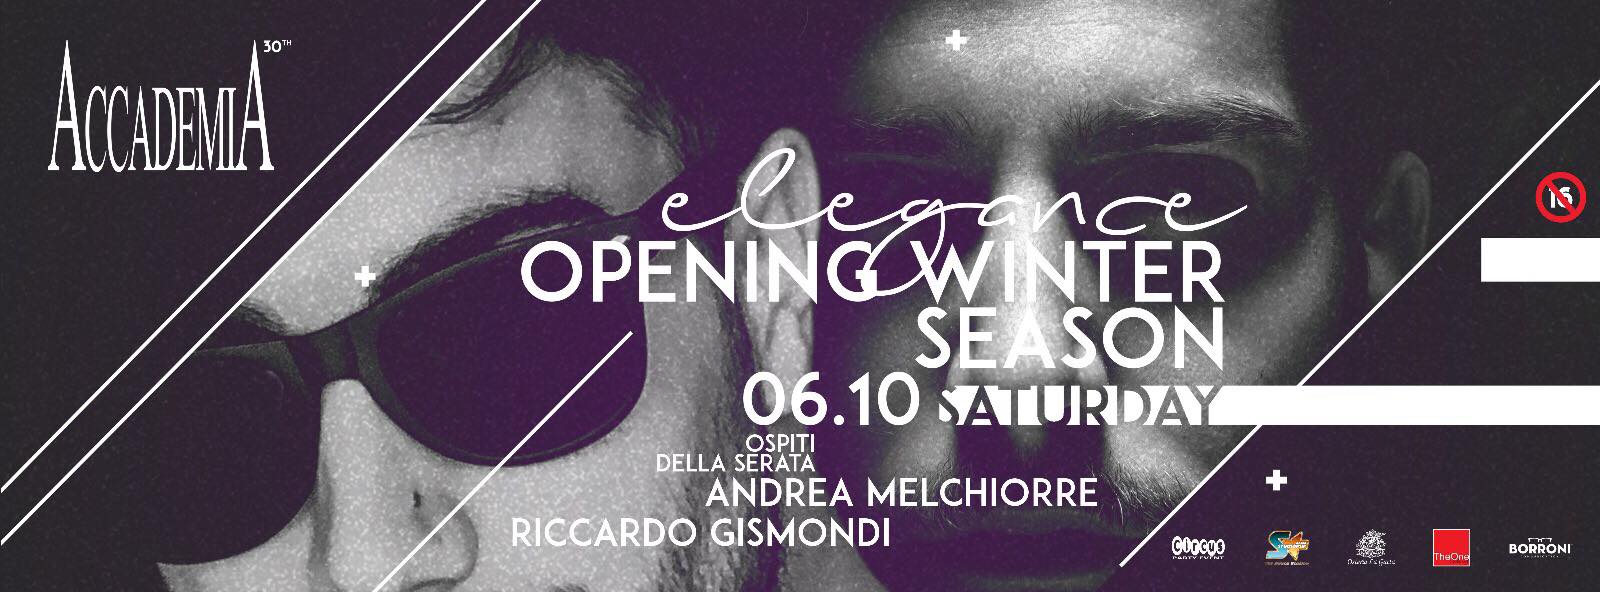 Inaugurazione con Andrea Melchiorre e Riccardo Gismondi discoteca Accademia